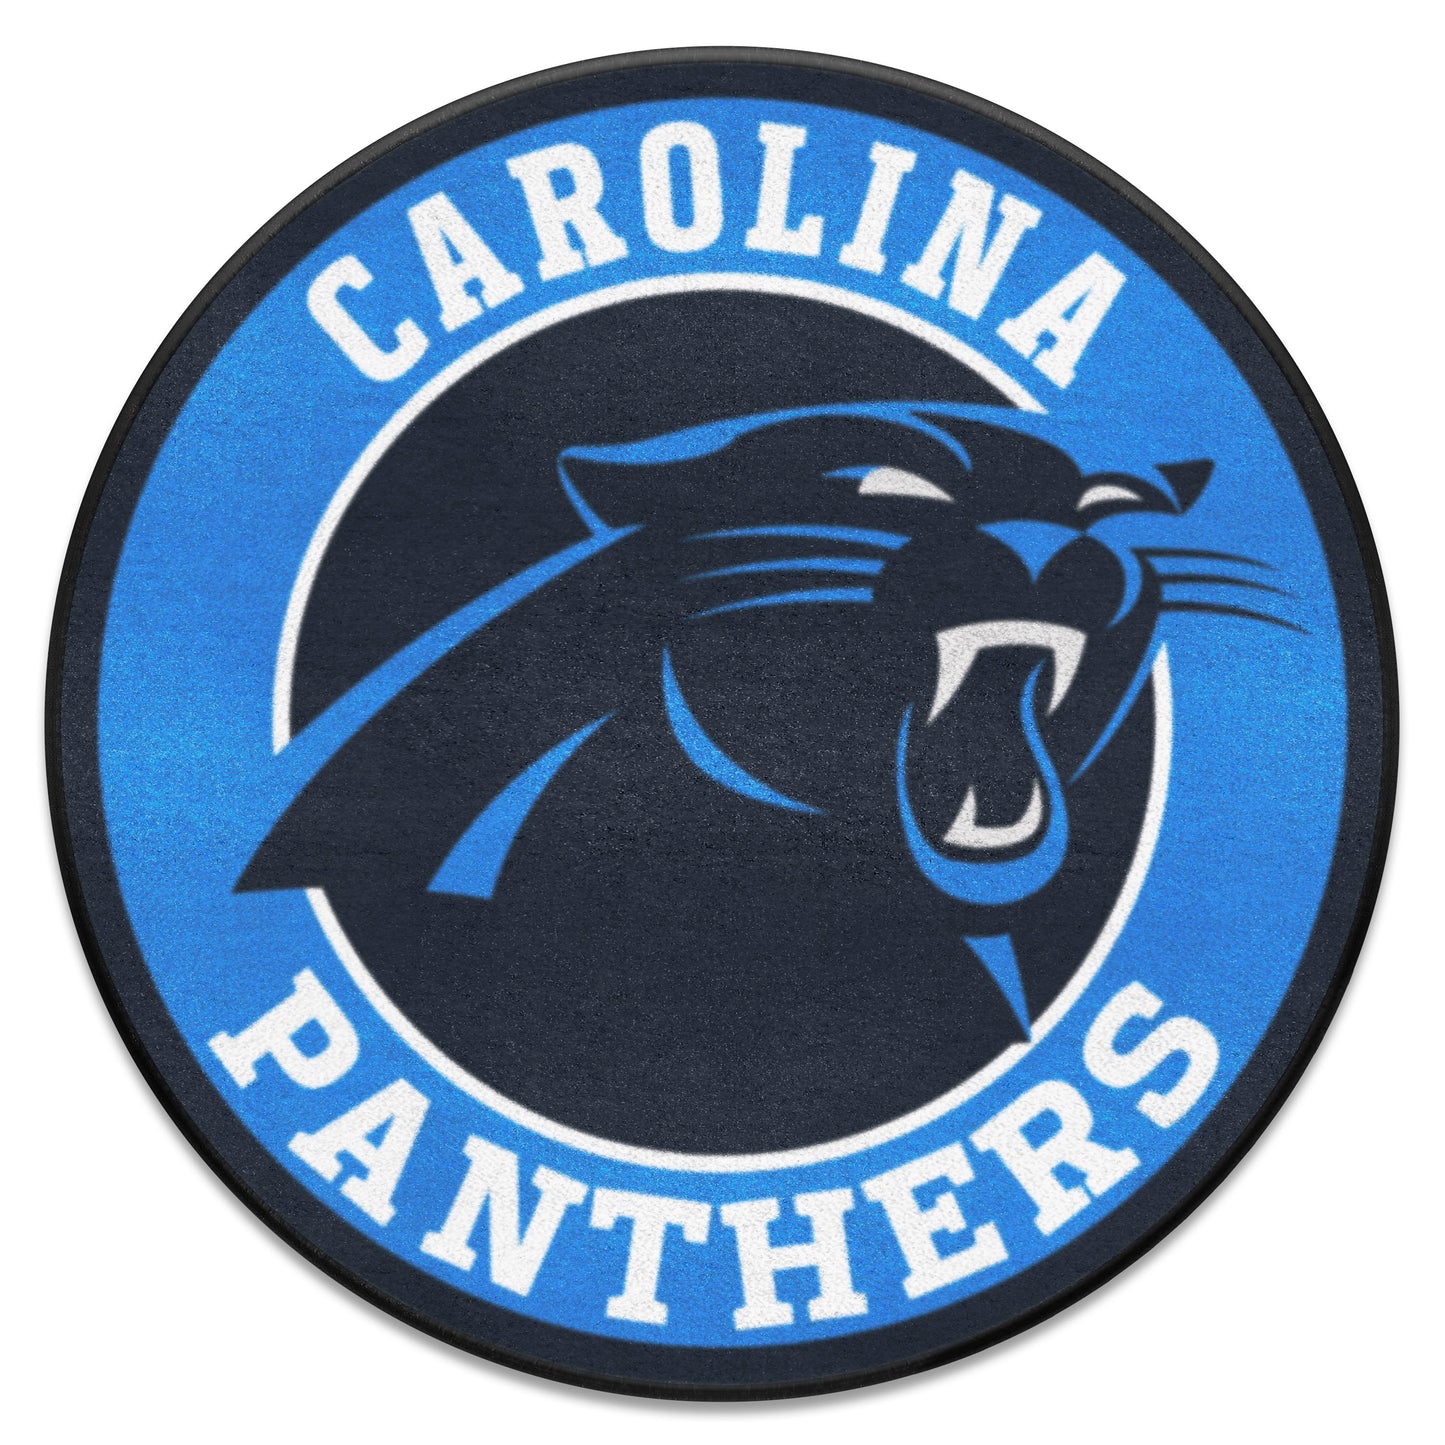 Carolina Panthers Roundel Rug - 27in. Diameter